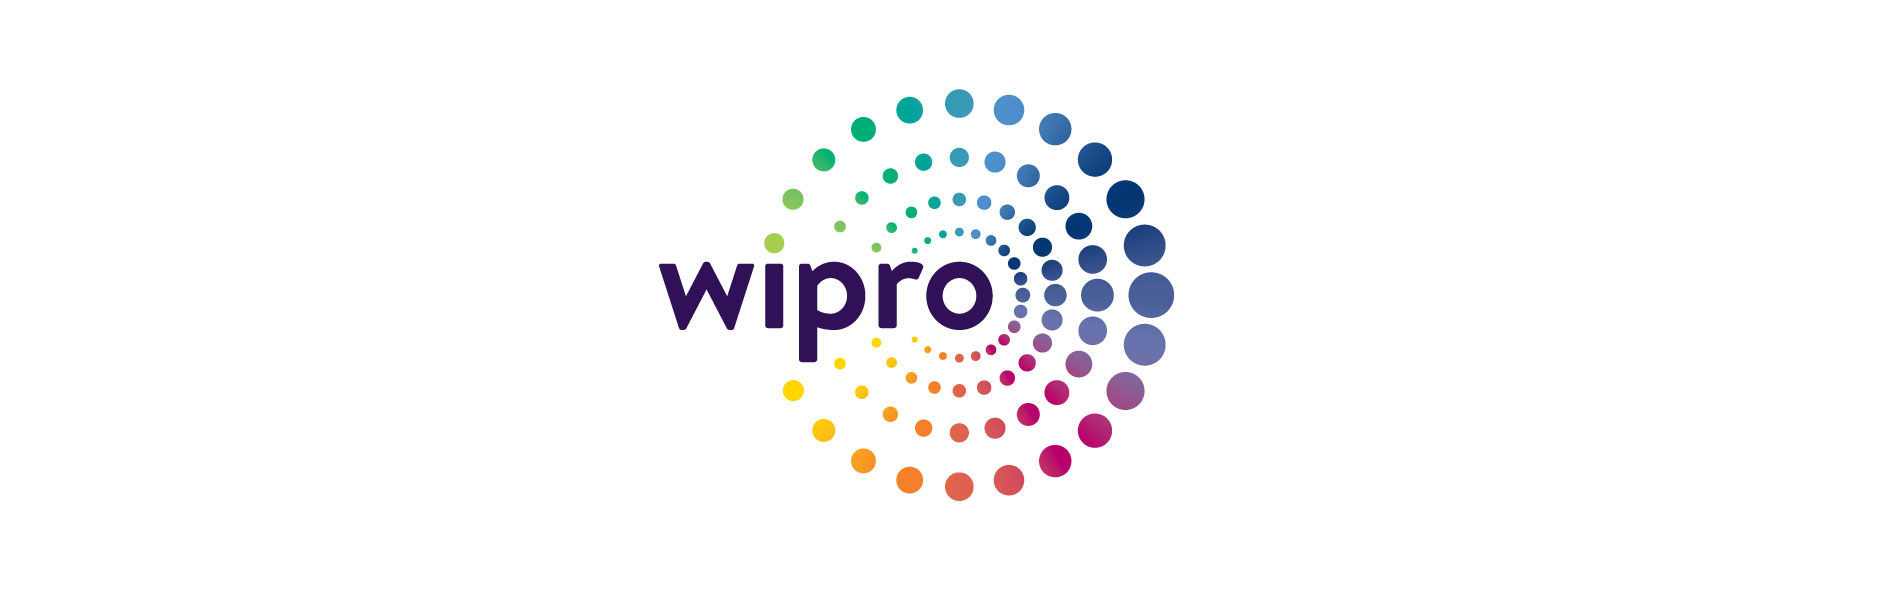 Wipro Cloud technology